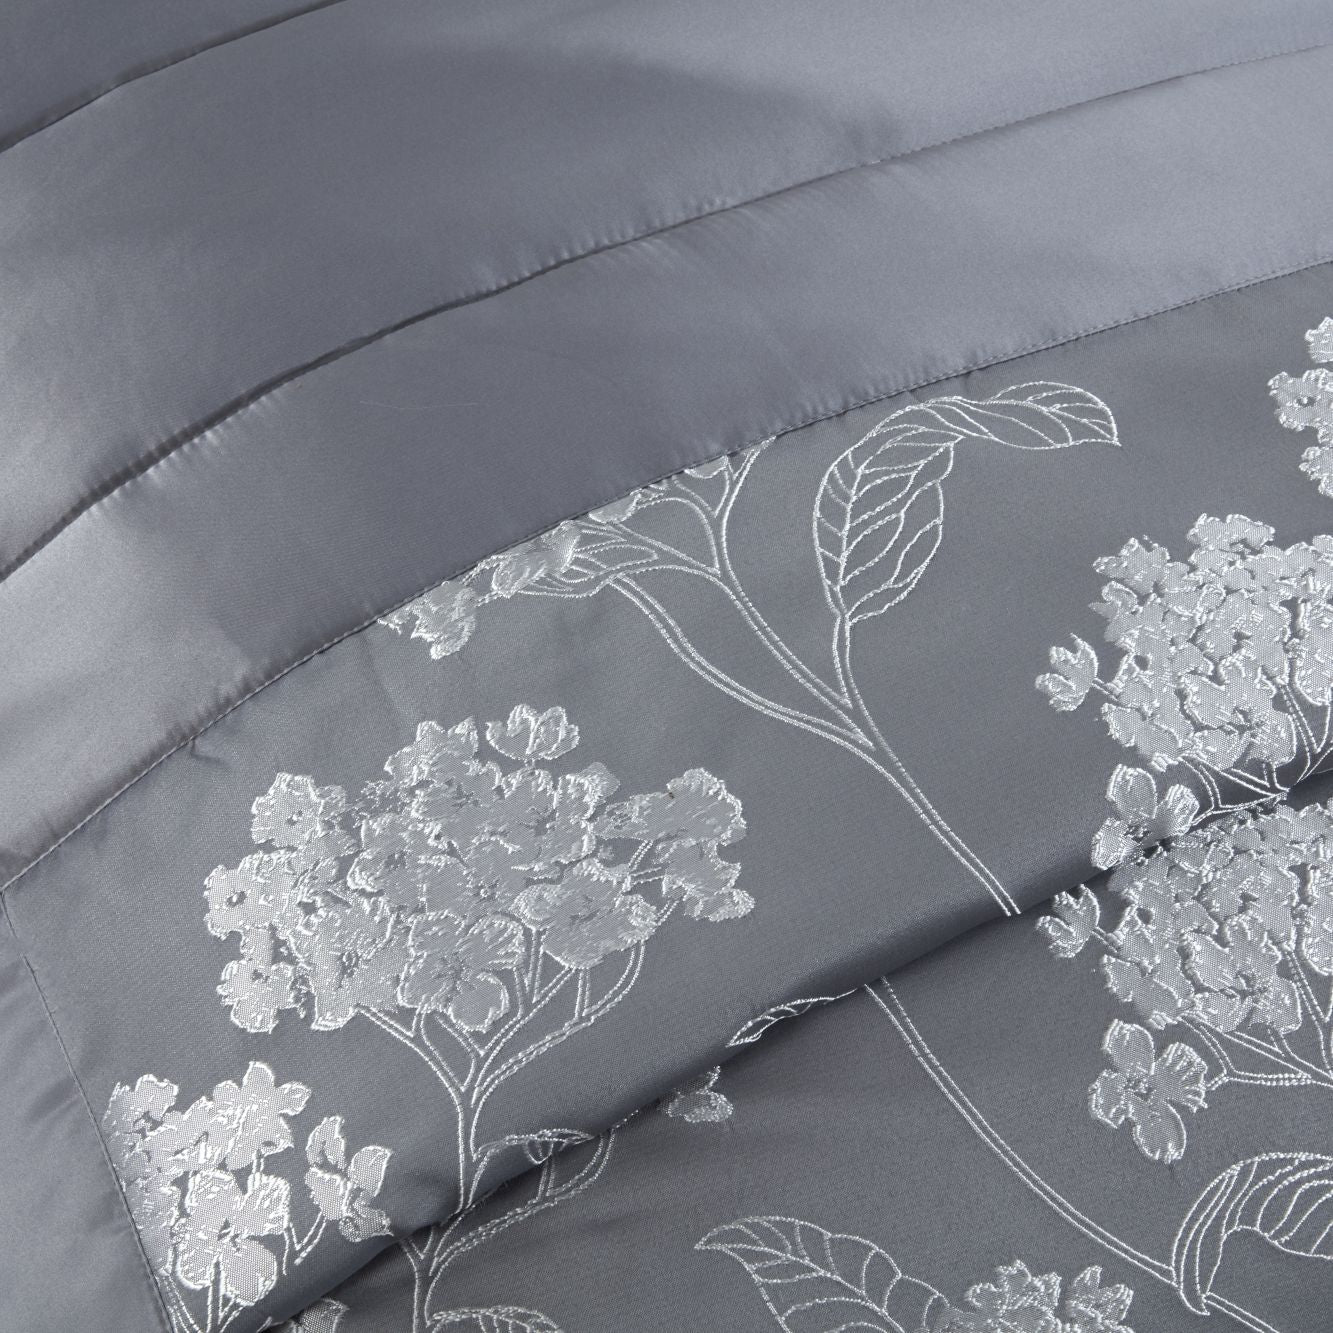 Blossom Silver Embellished Jacquard Quilted Bedspread Set